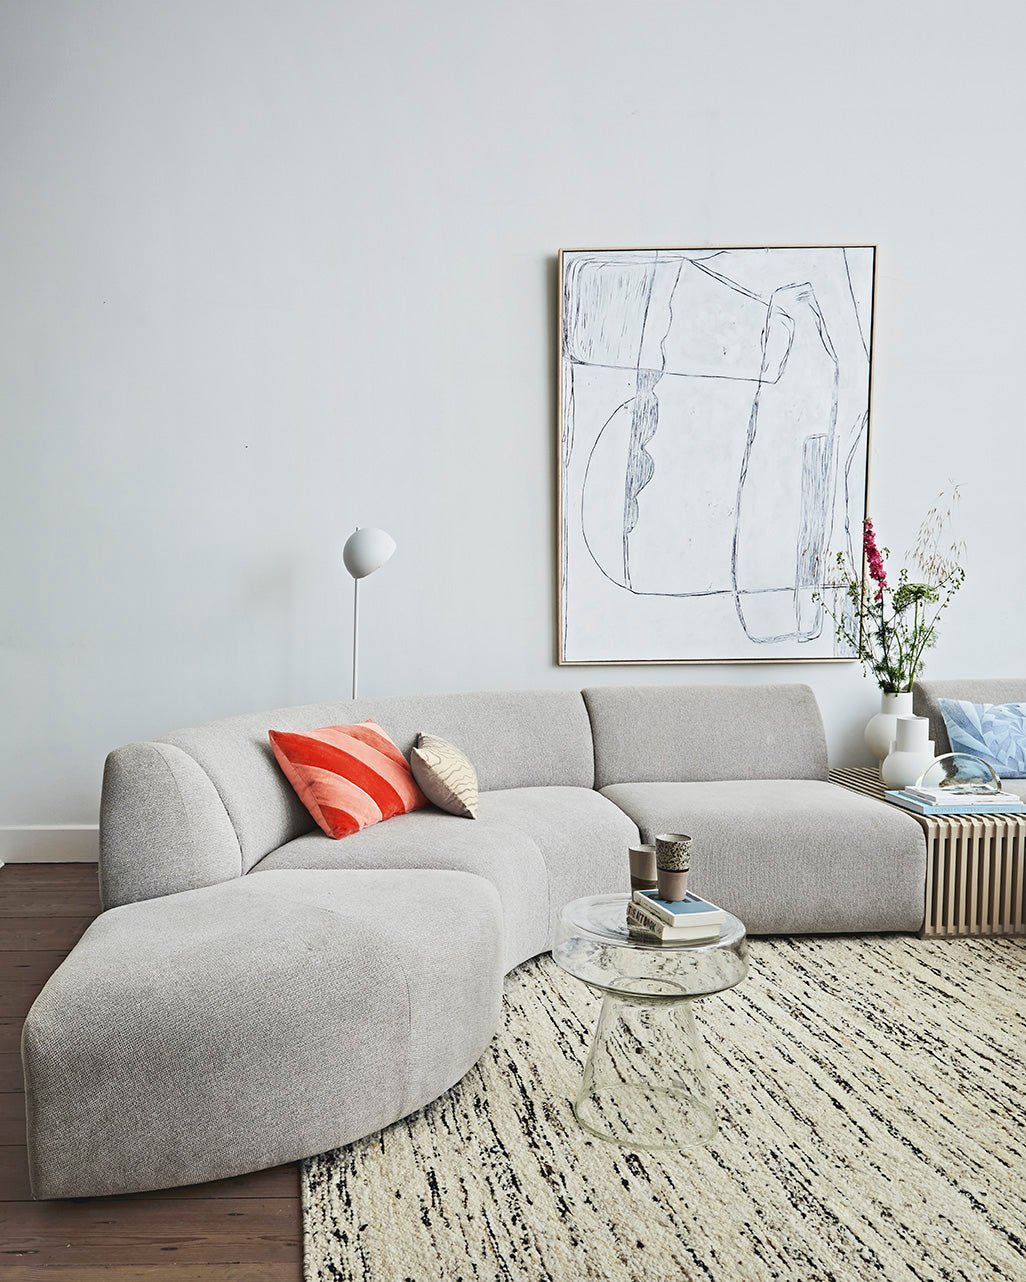 Jax couch: element round - sneak | light grey - Urban Nest